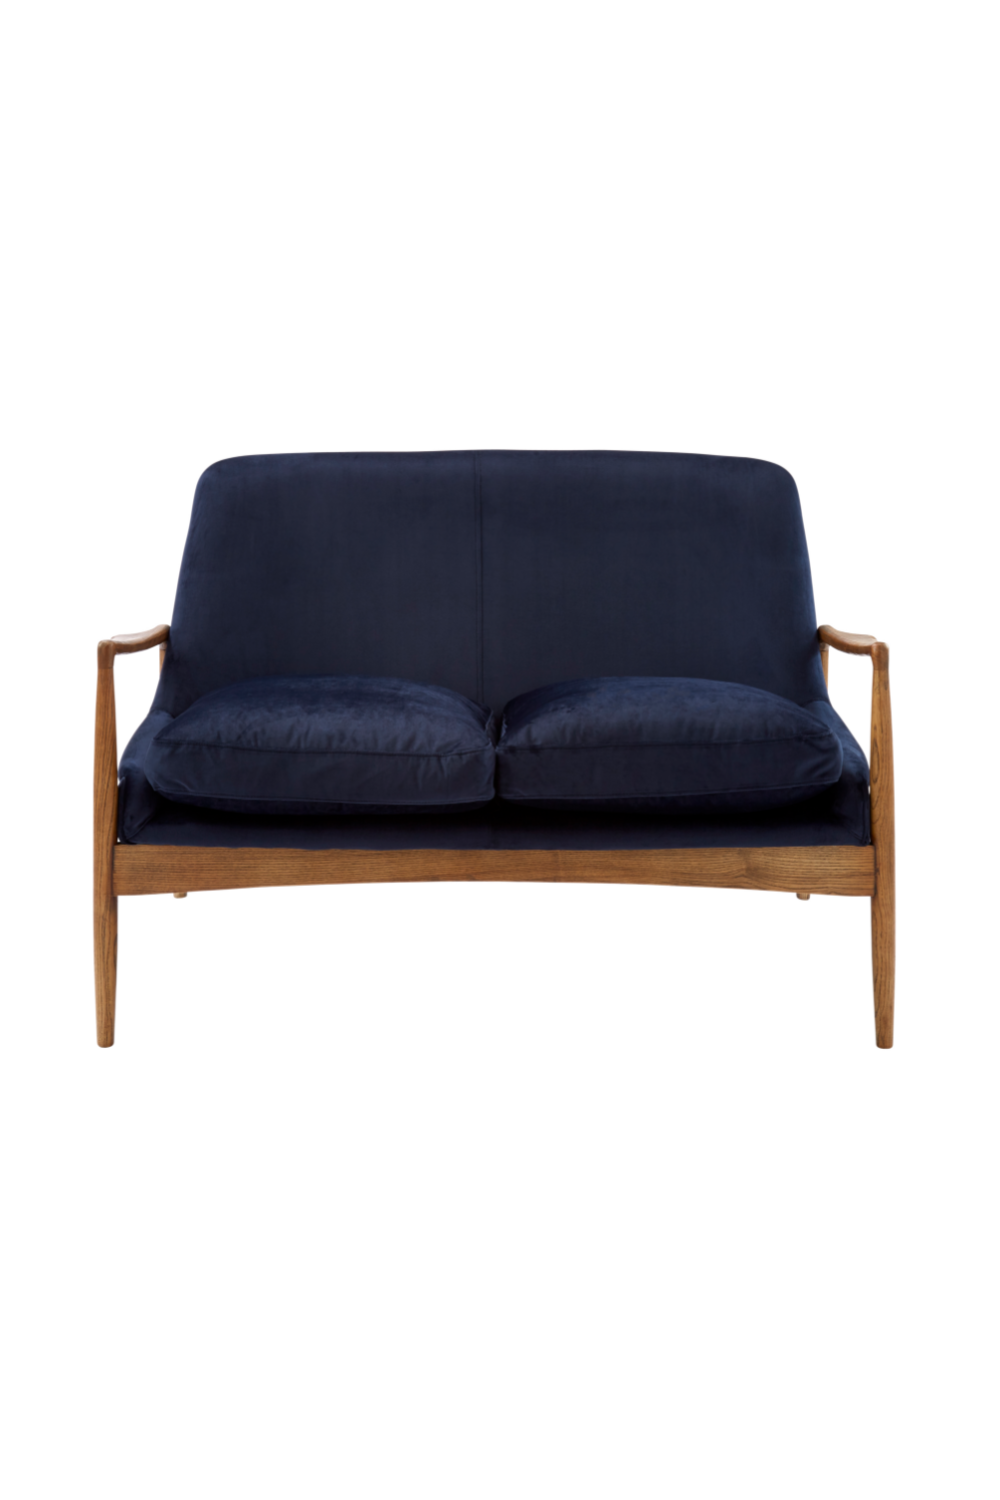 Blue Velvet Sofa in Wooden Frame | Andrew Martin Crispin | Woodfurniture.com